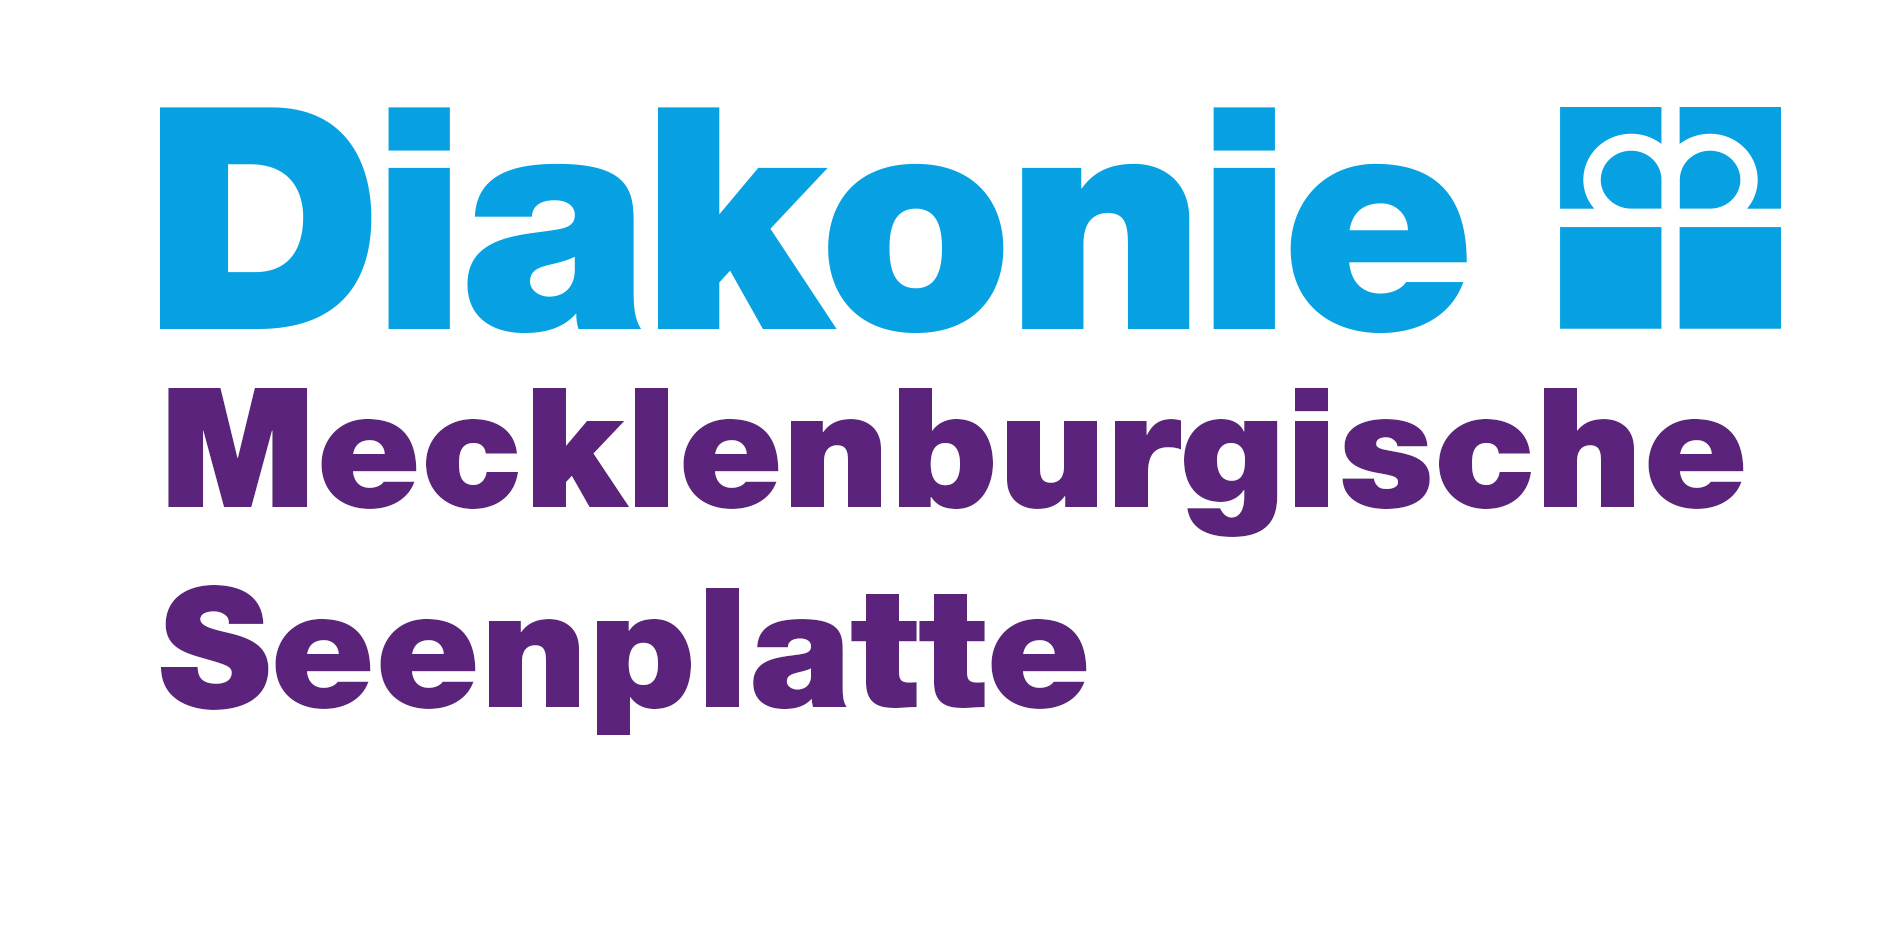 Logo: Diakonie Mecklenburgische Seenplatte gGmbH